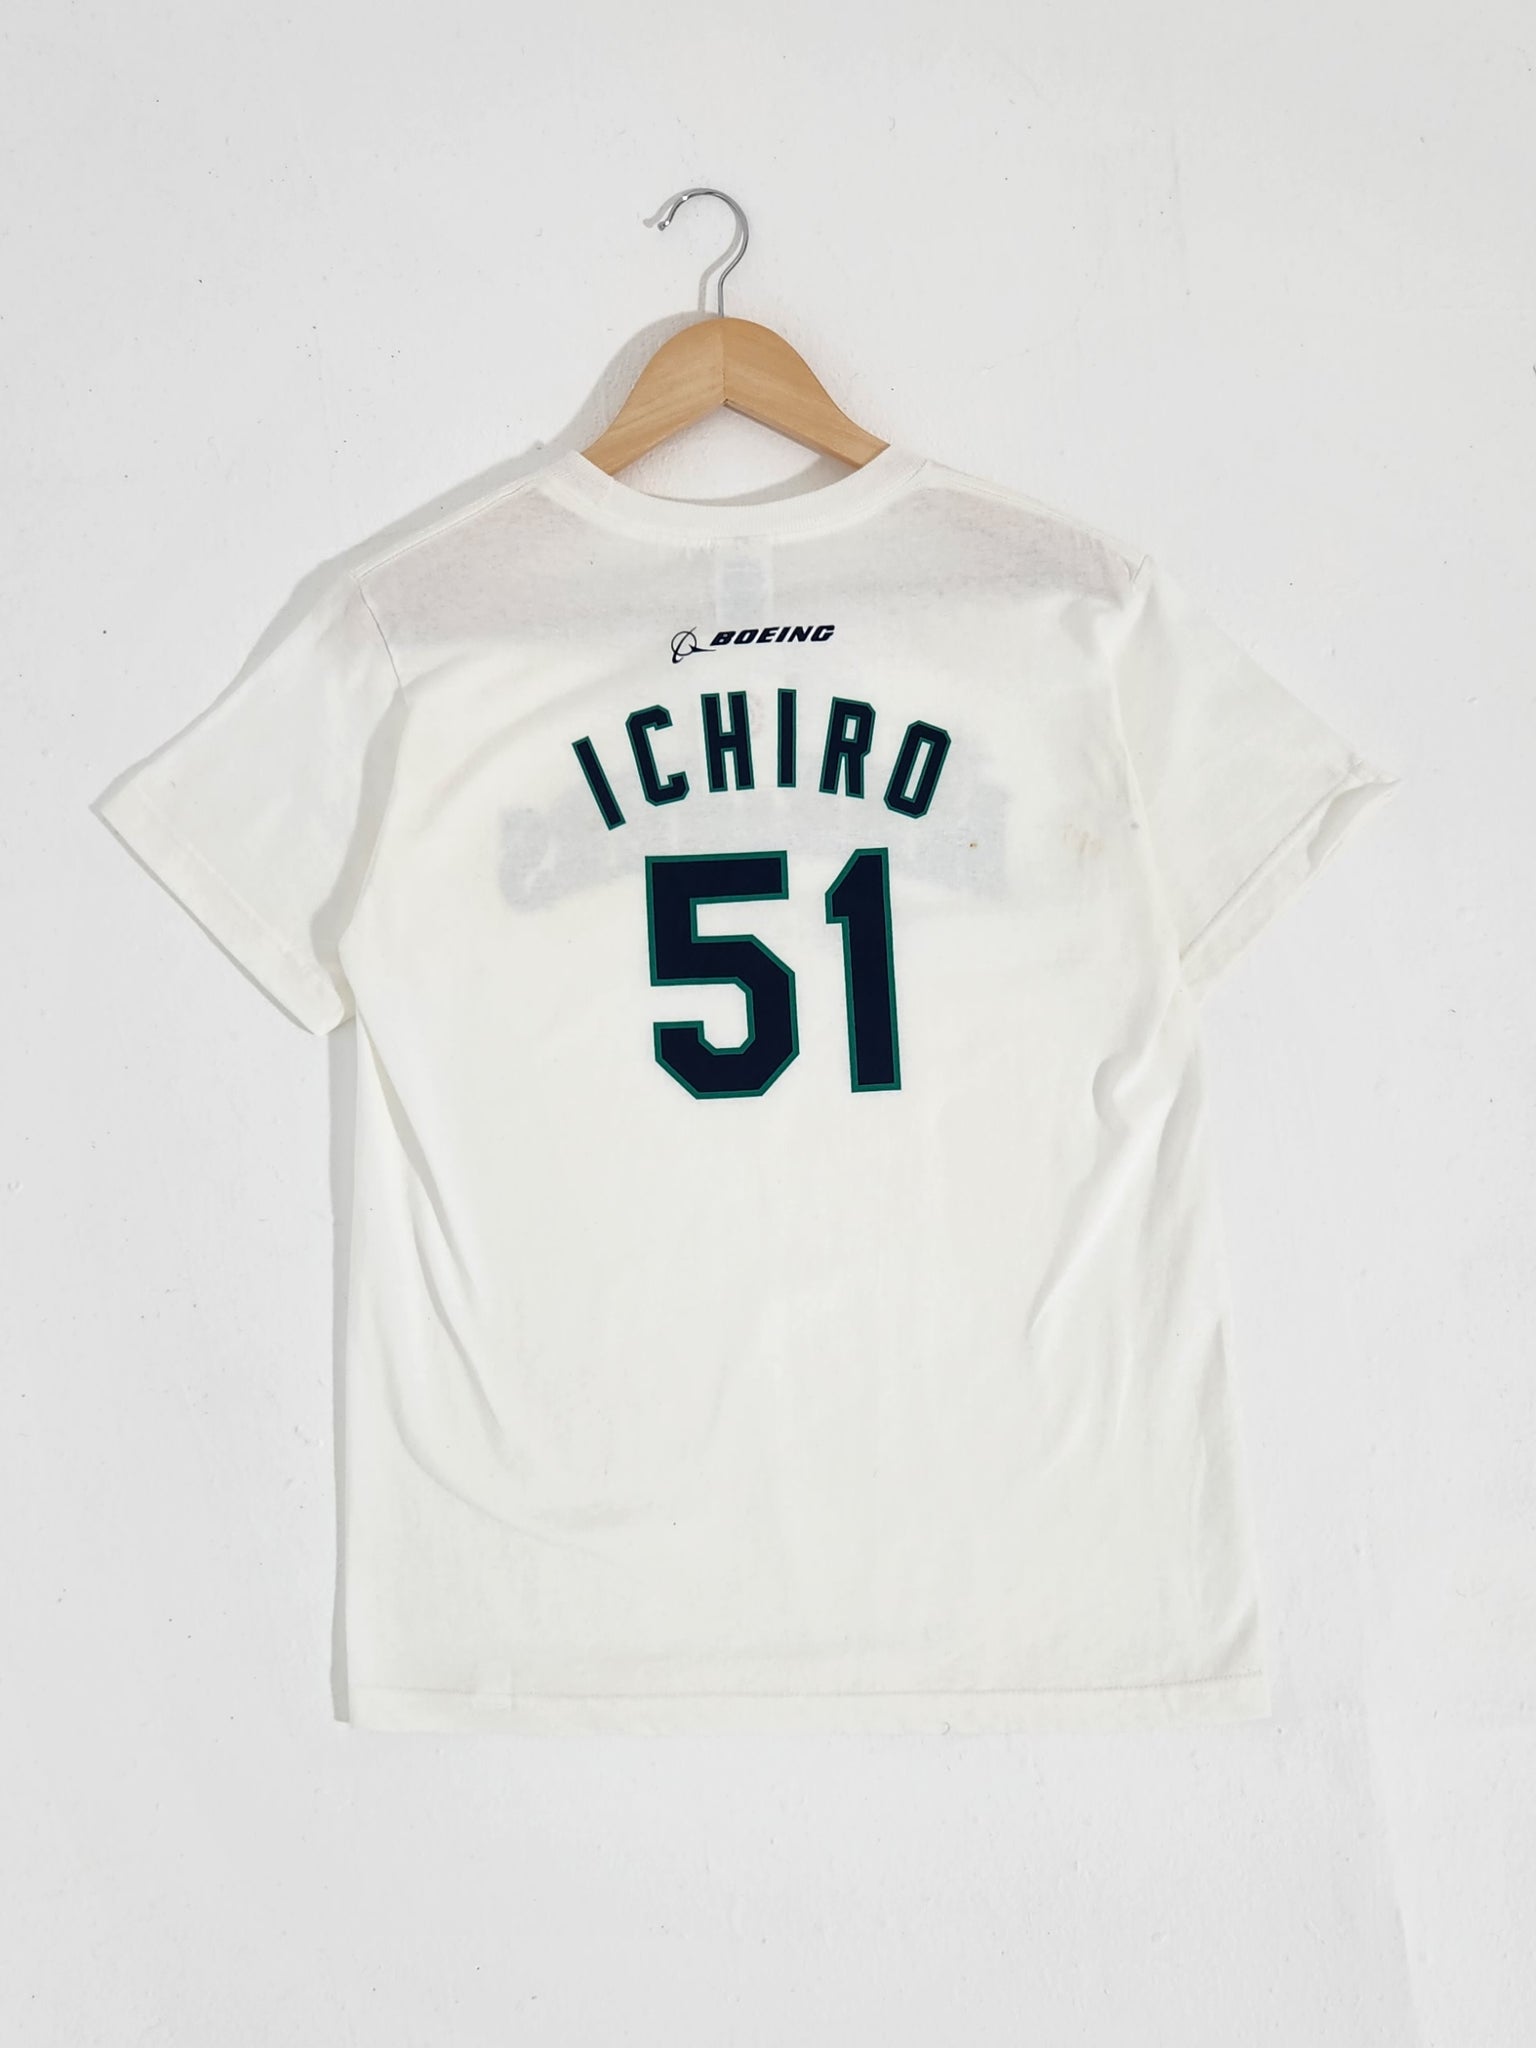 Suzuki Ichiro Seattle Mariners baseball player Vintage shirt